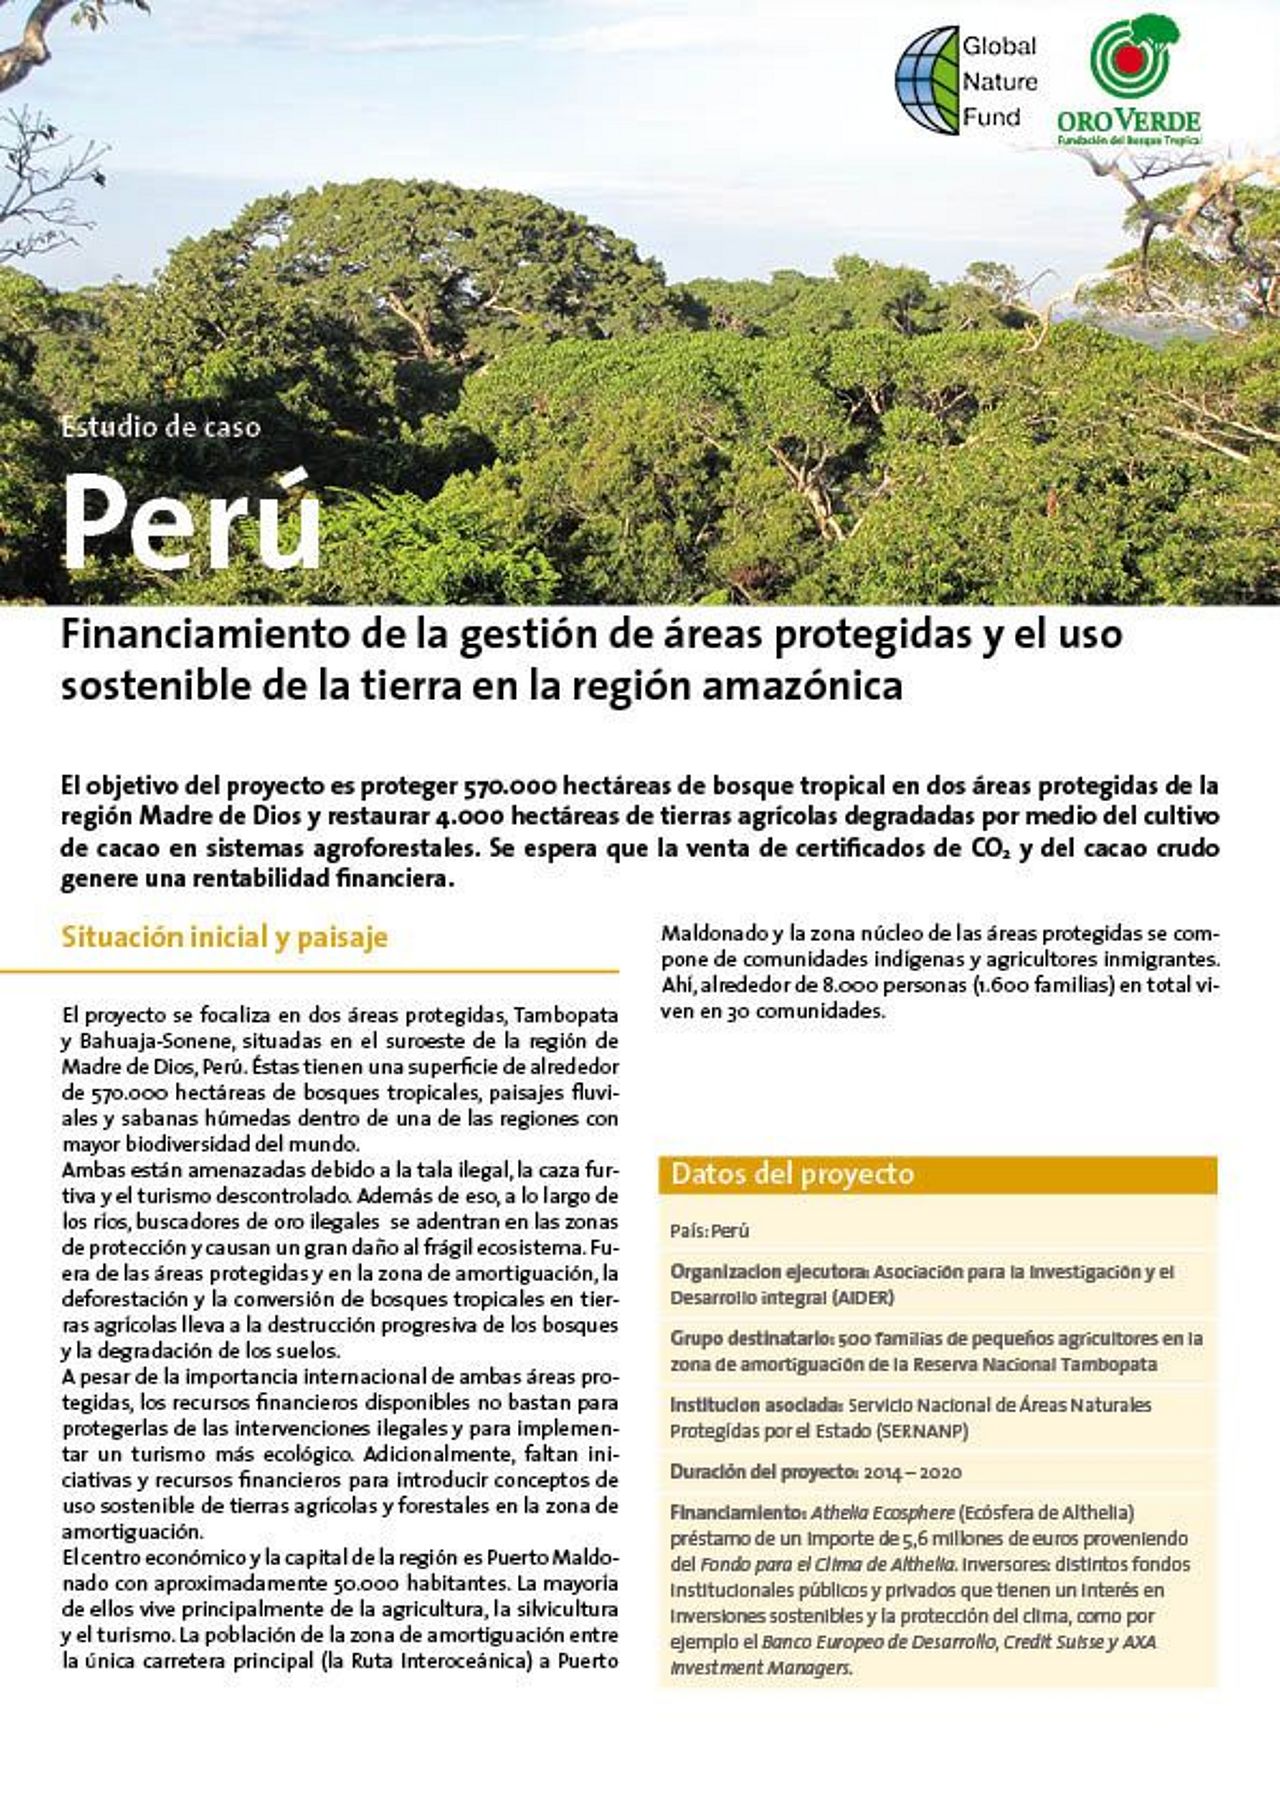 El cultivo del cacao en los sistemas agroforestales del Perú